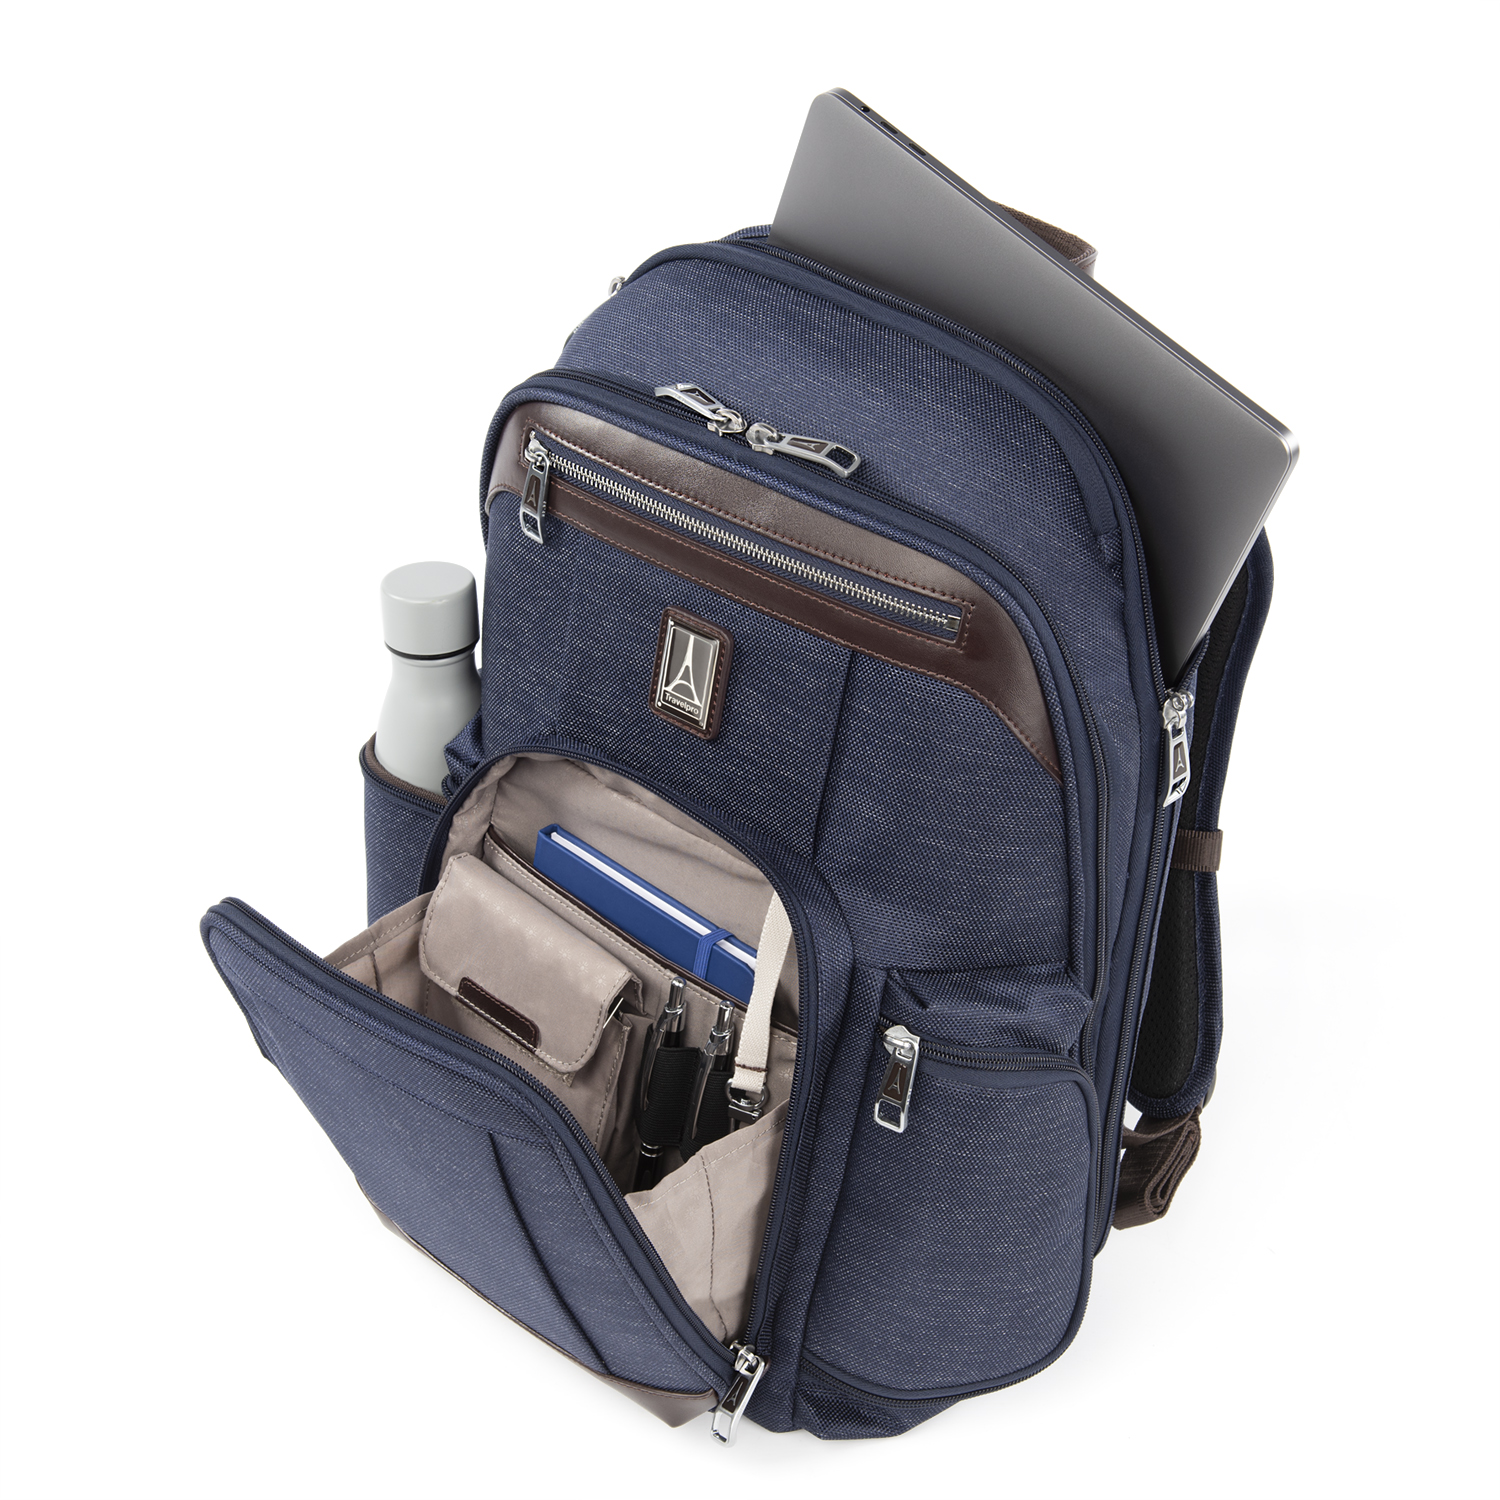 Travelpro Platinum Elite Business Backpack | eBay